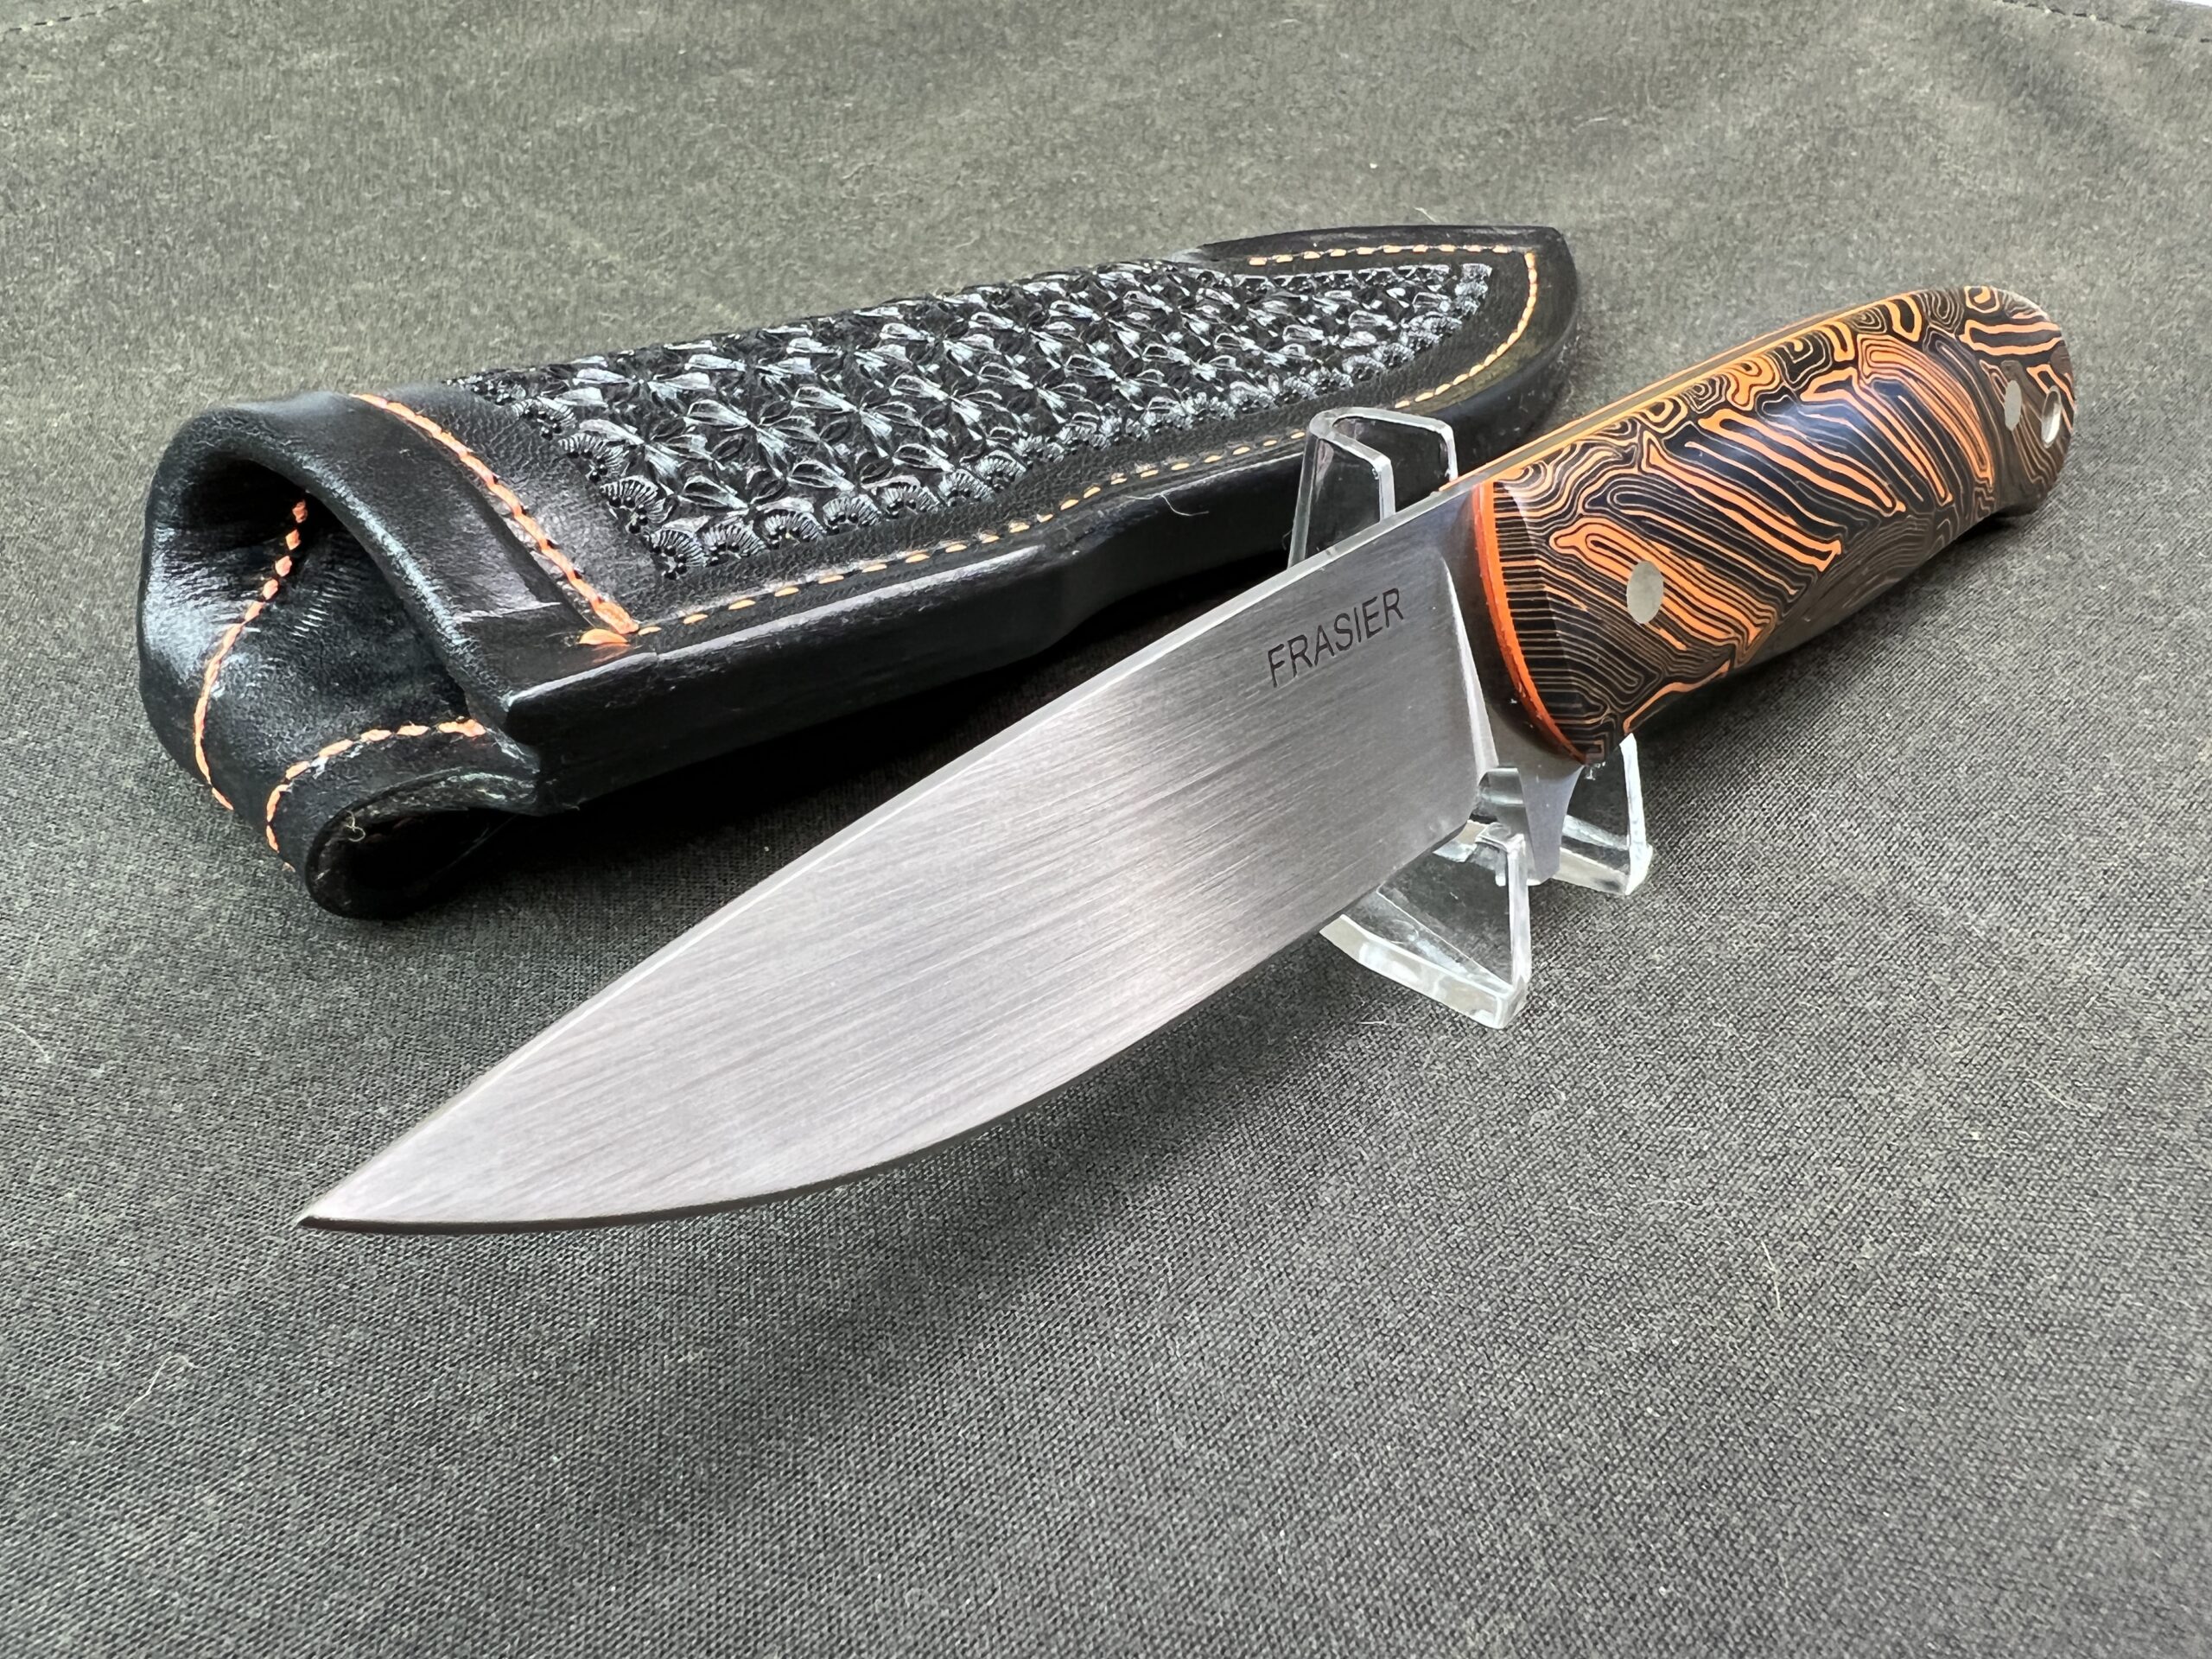 Jon Kelly Designs Knives